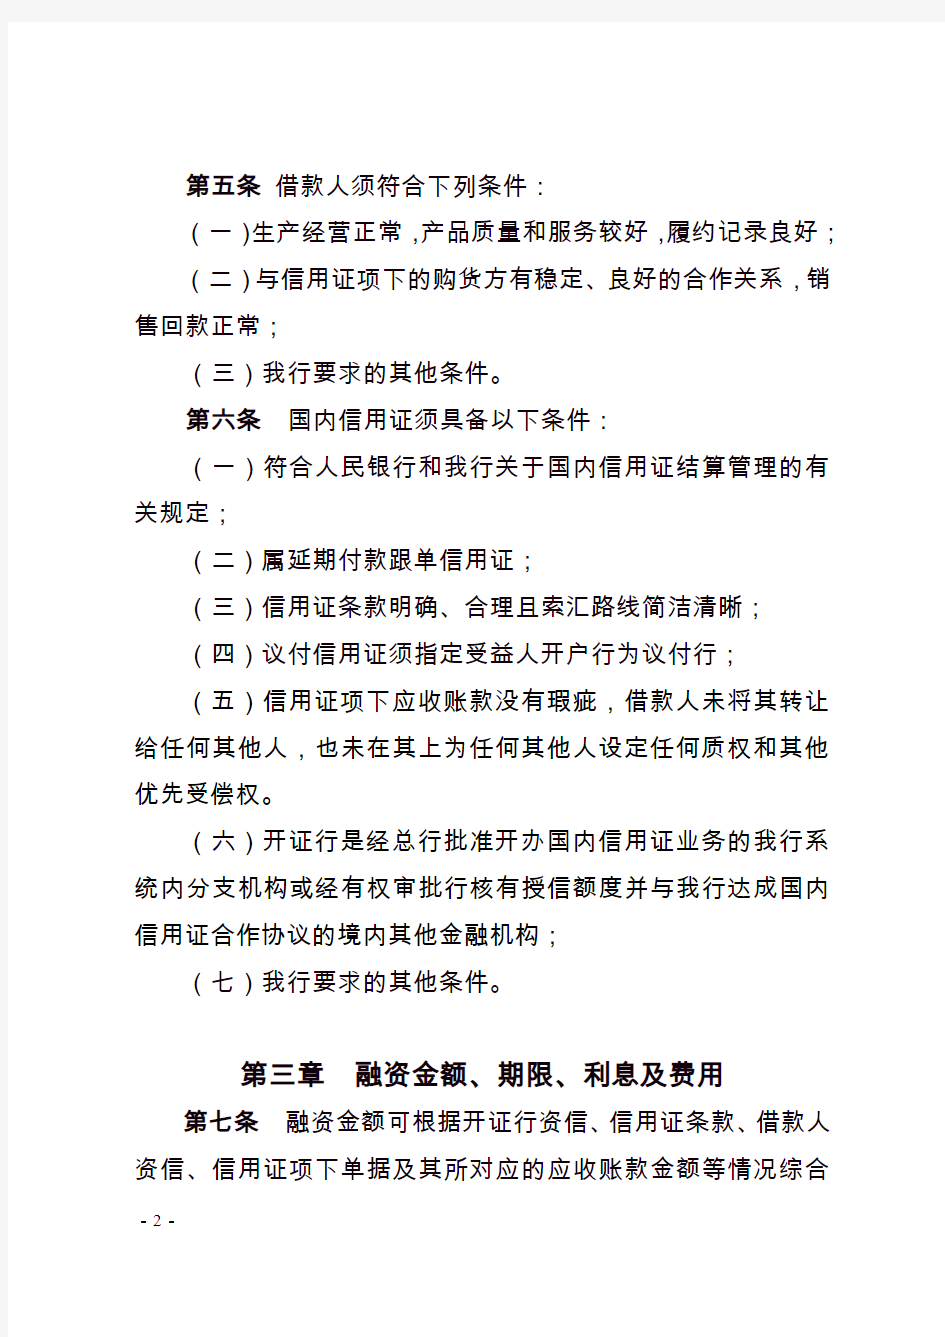 中国工商银行国内信用证项下卖方融资业务管理办法